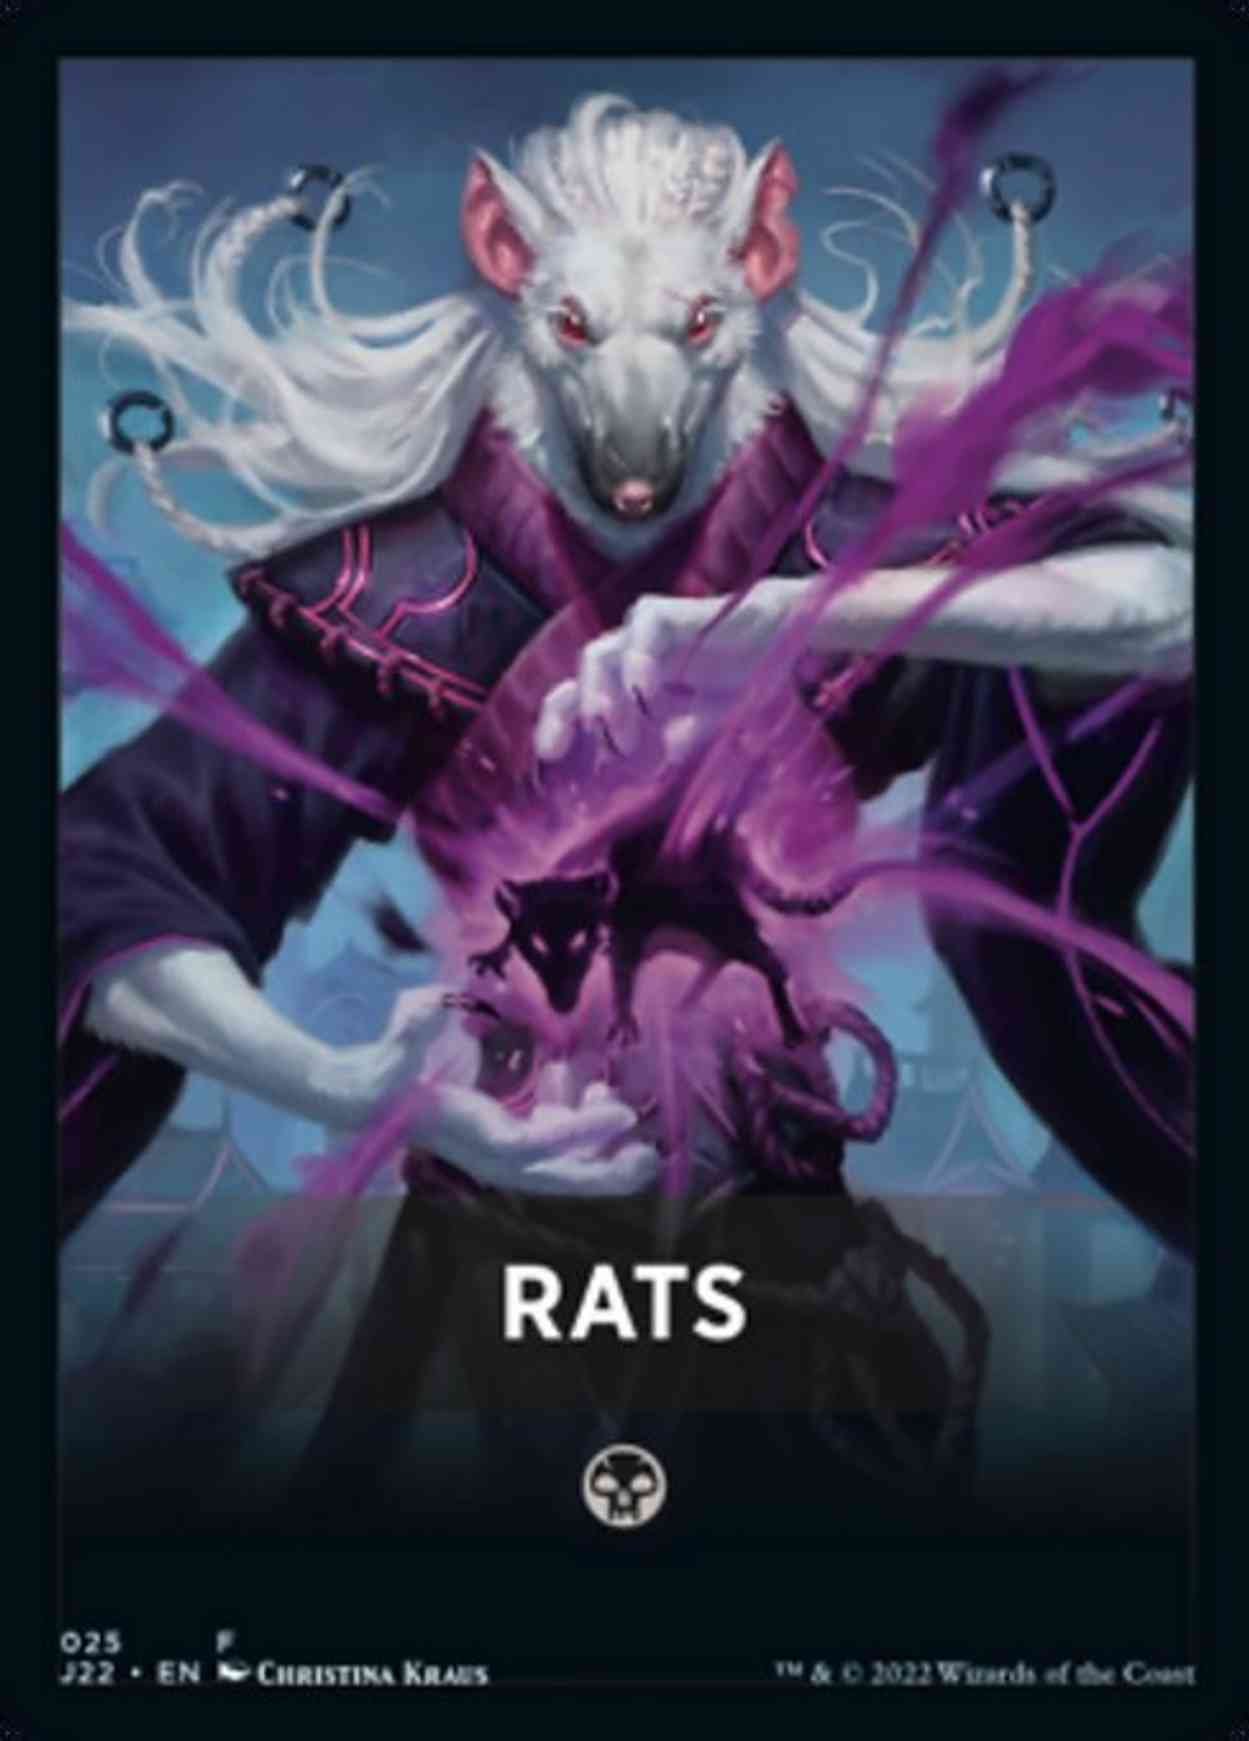 Rats Theme Card magic card front